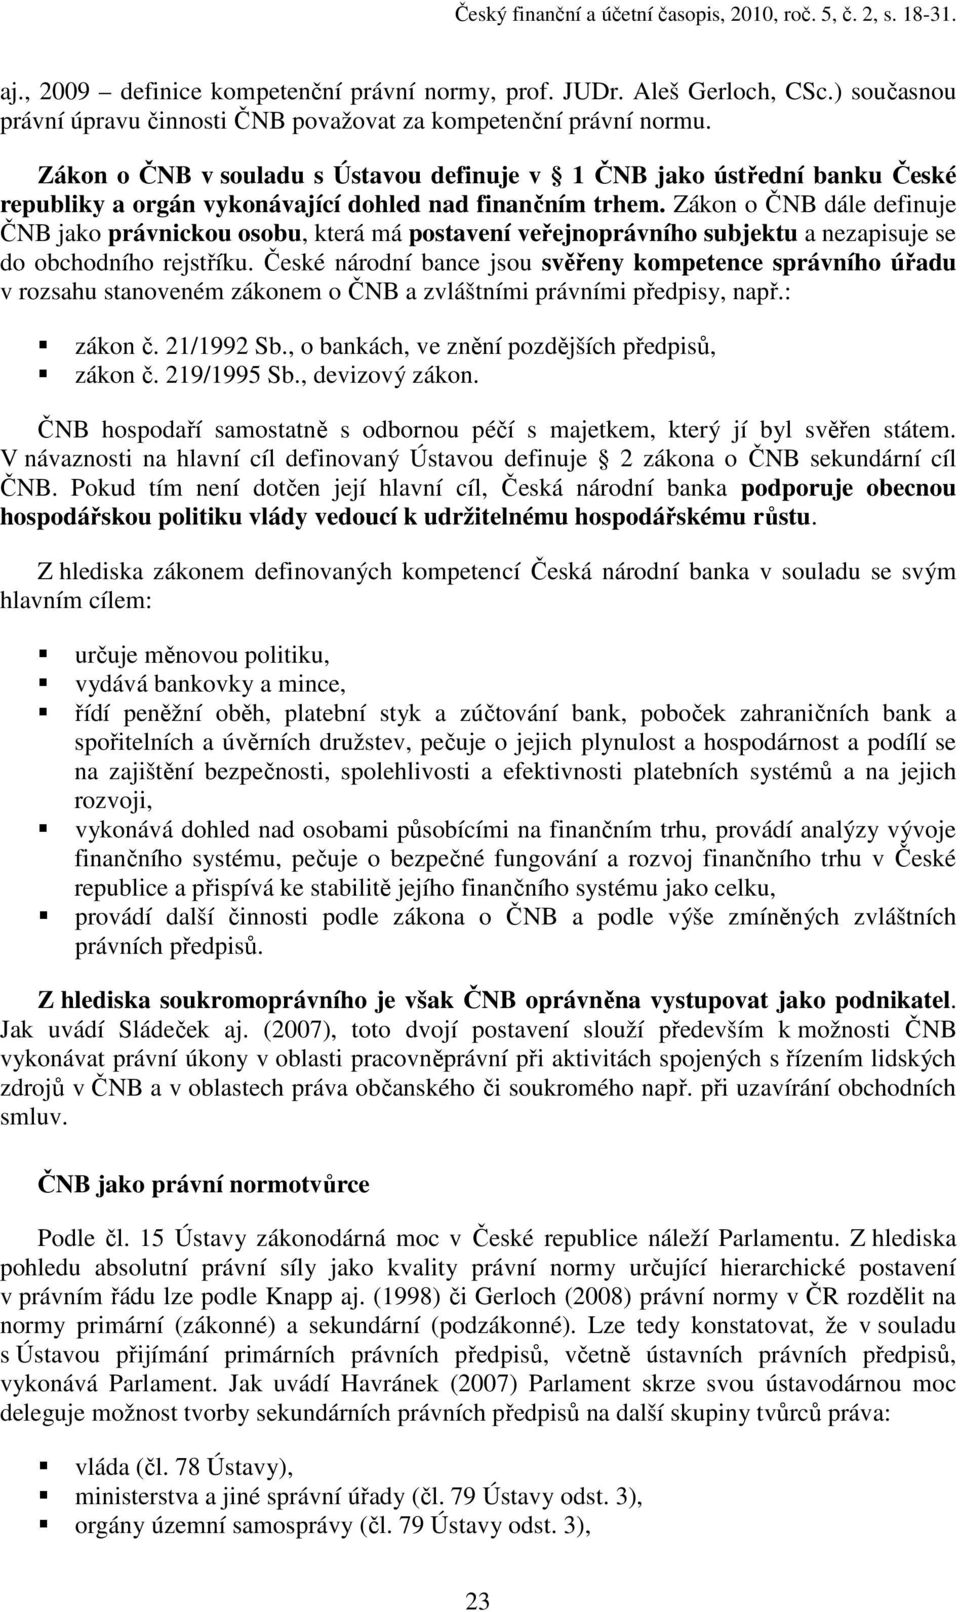 Zákon o ČNB v souladu s Ústavou definuje v 1 ČNB jako ústřední banku České republiky a orgán vykonávající dohled nad finančním trhem.